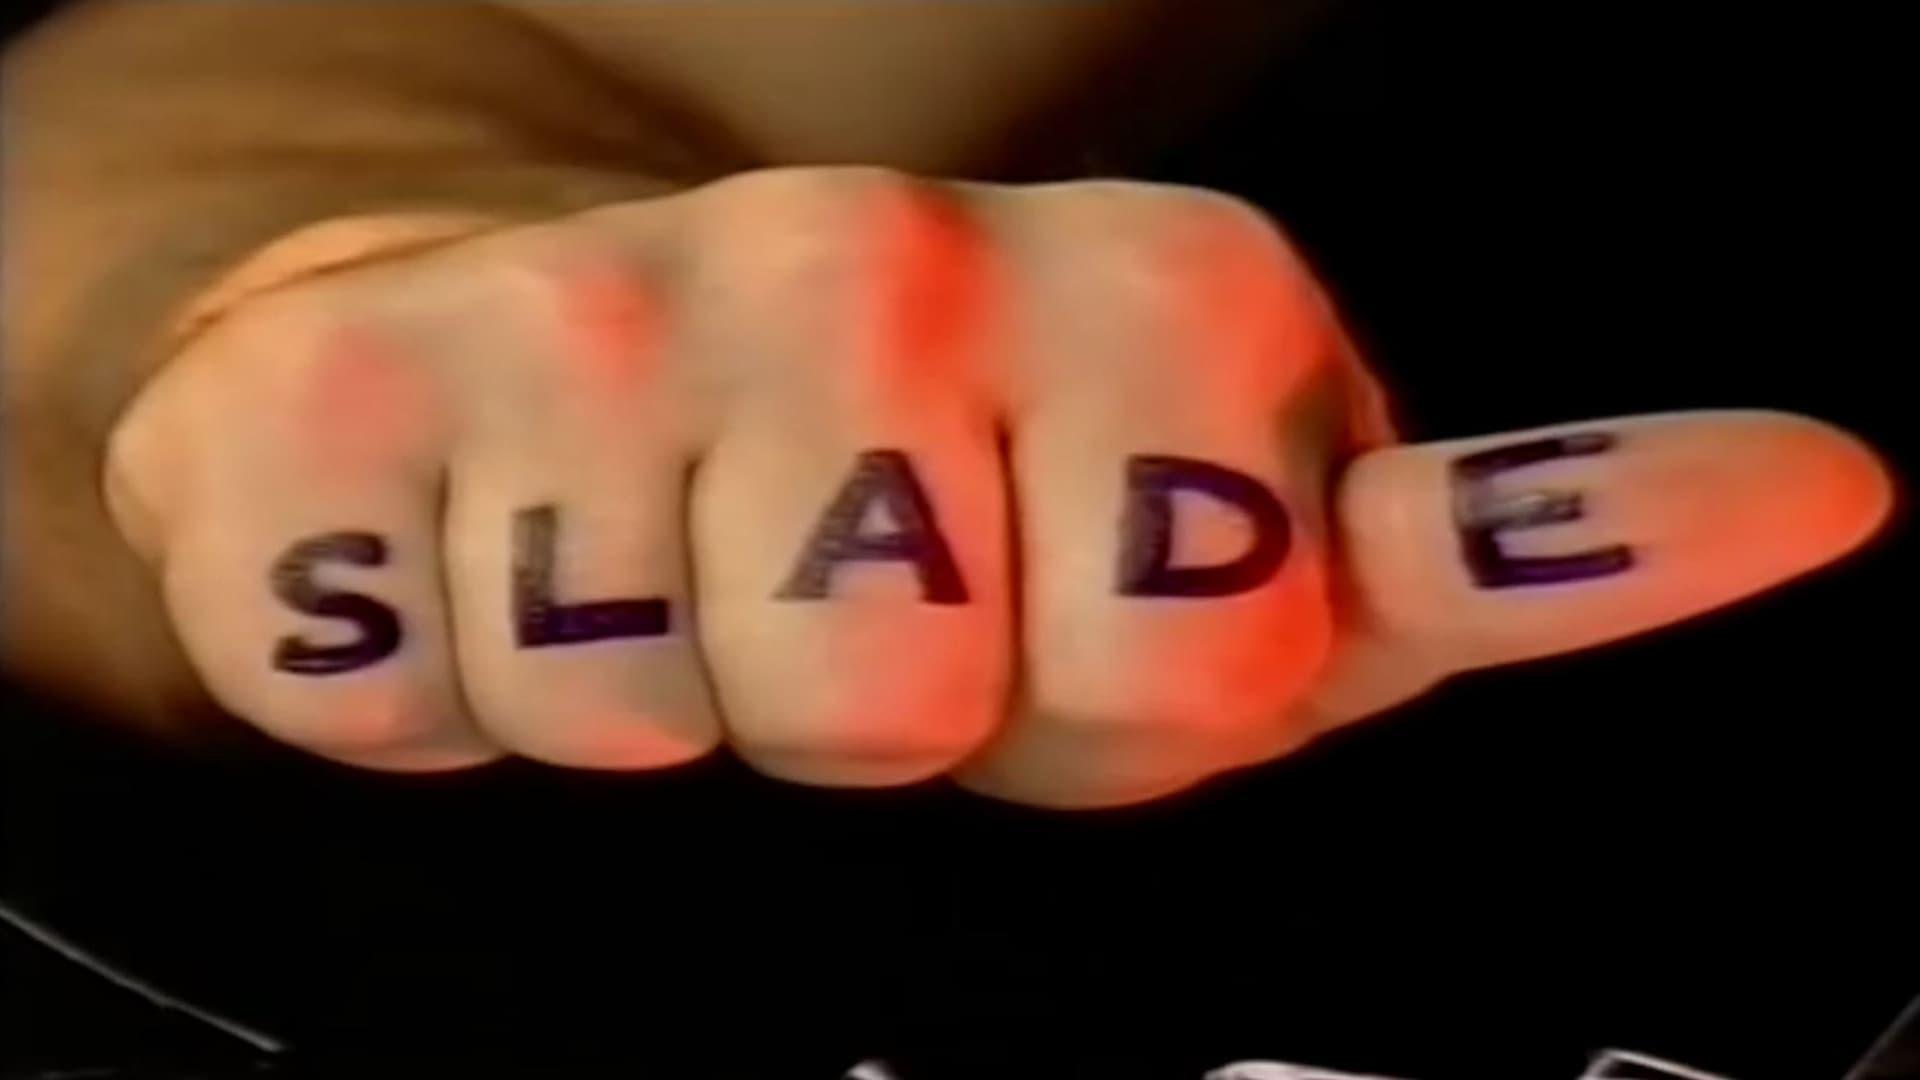 Slade: It's Slade backdrop